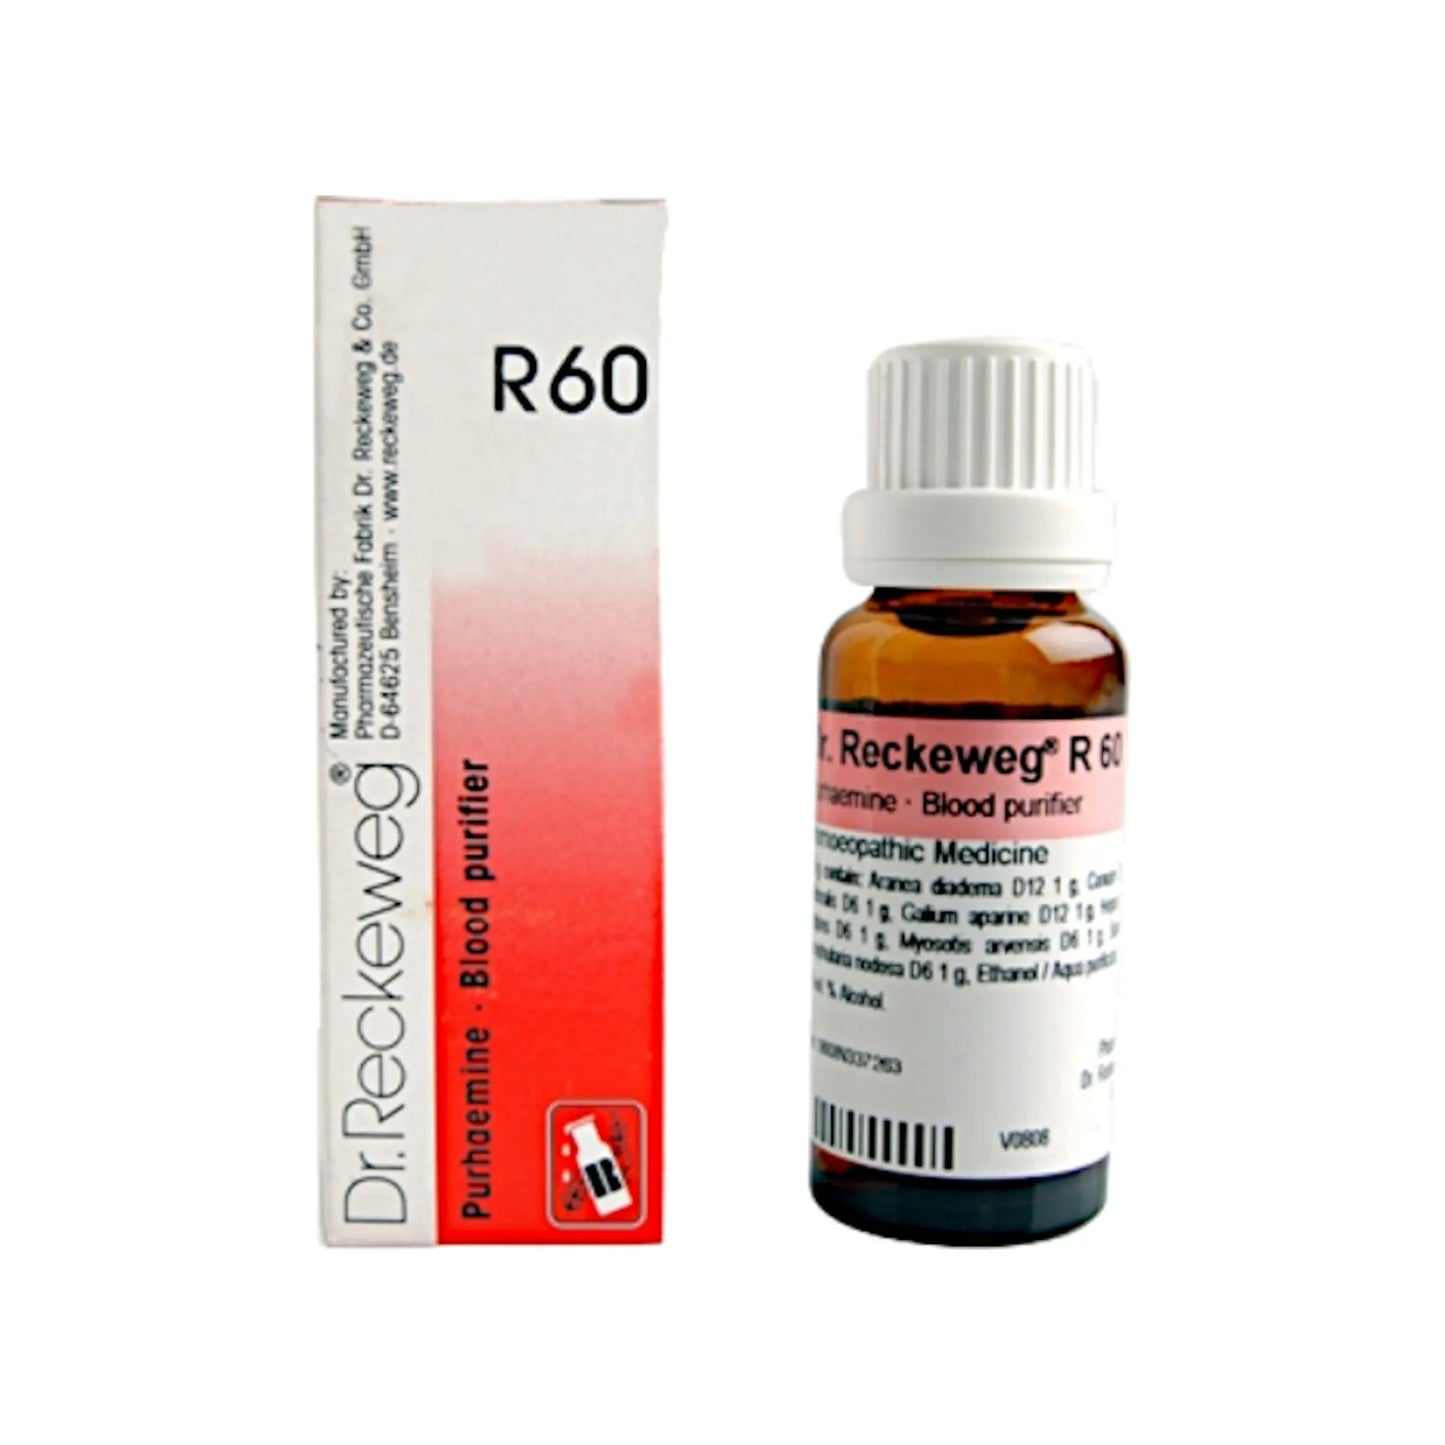 Dr. Reckeweg R60 - Purhaemine Blood Purifier 22 ml - my-ayurvedic